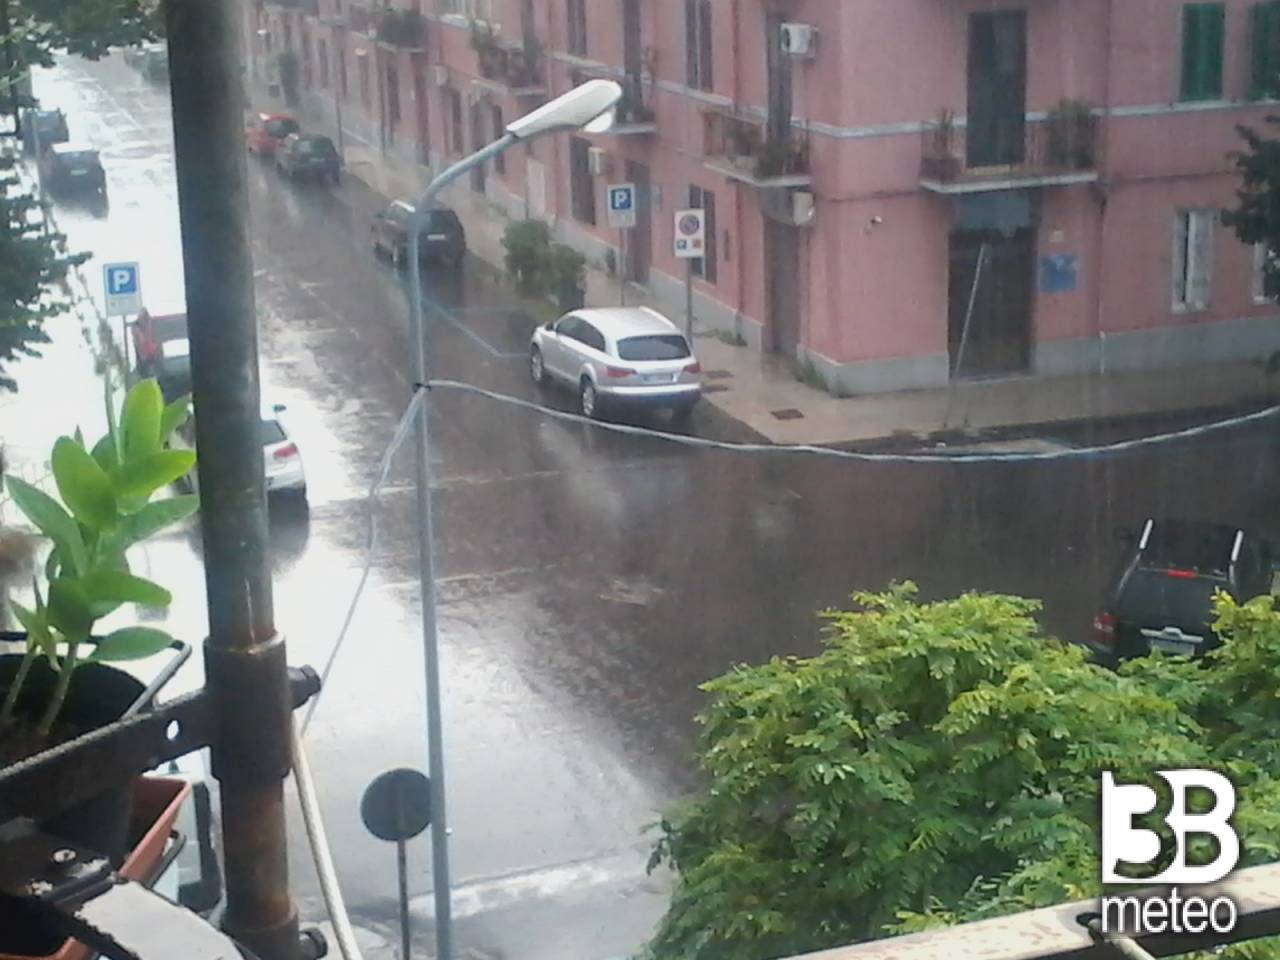 Meteo Messina: piogge lunedì, qualche possibile rovescio martedì, discreto mercoledì - 3bmeteo